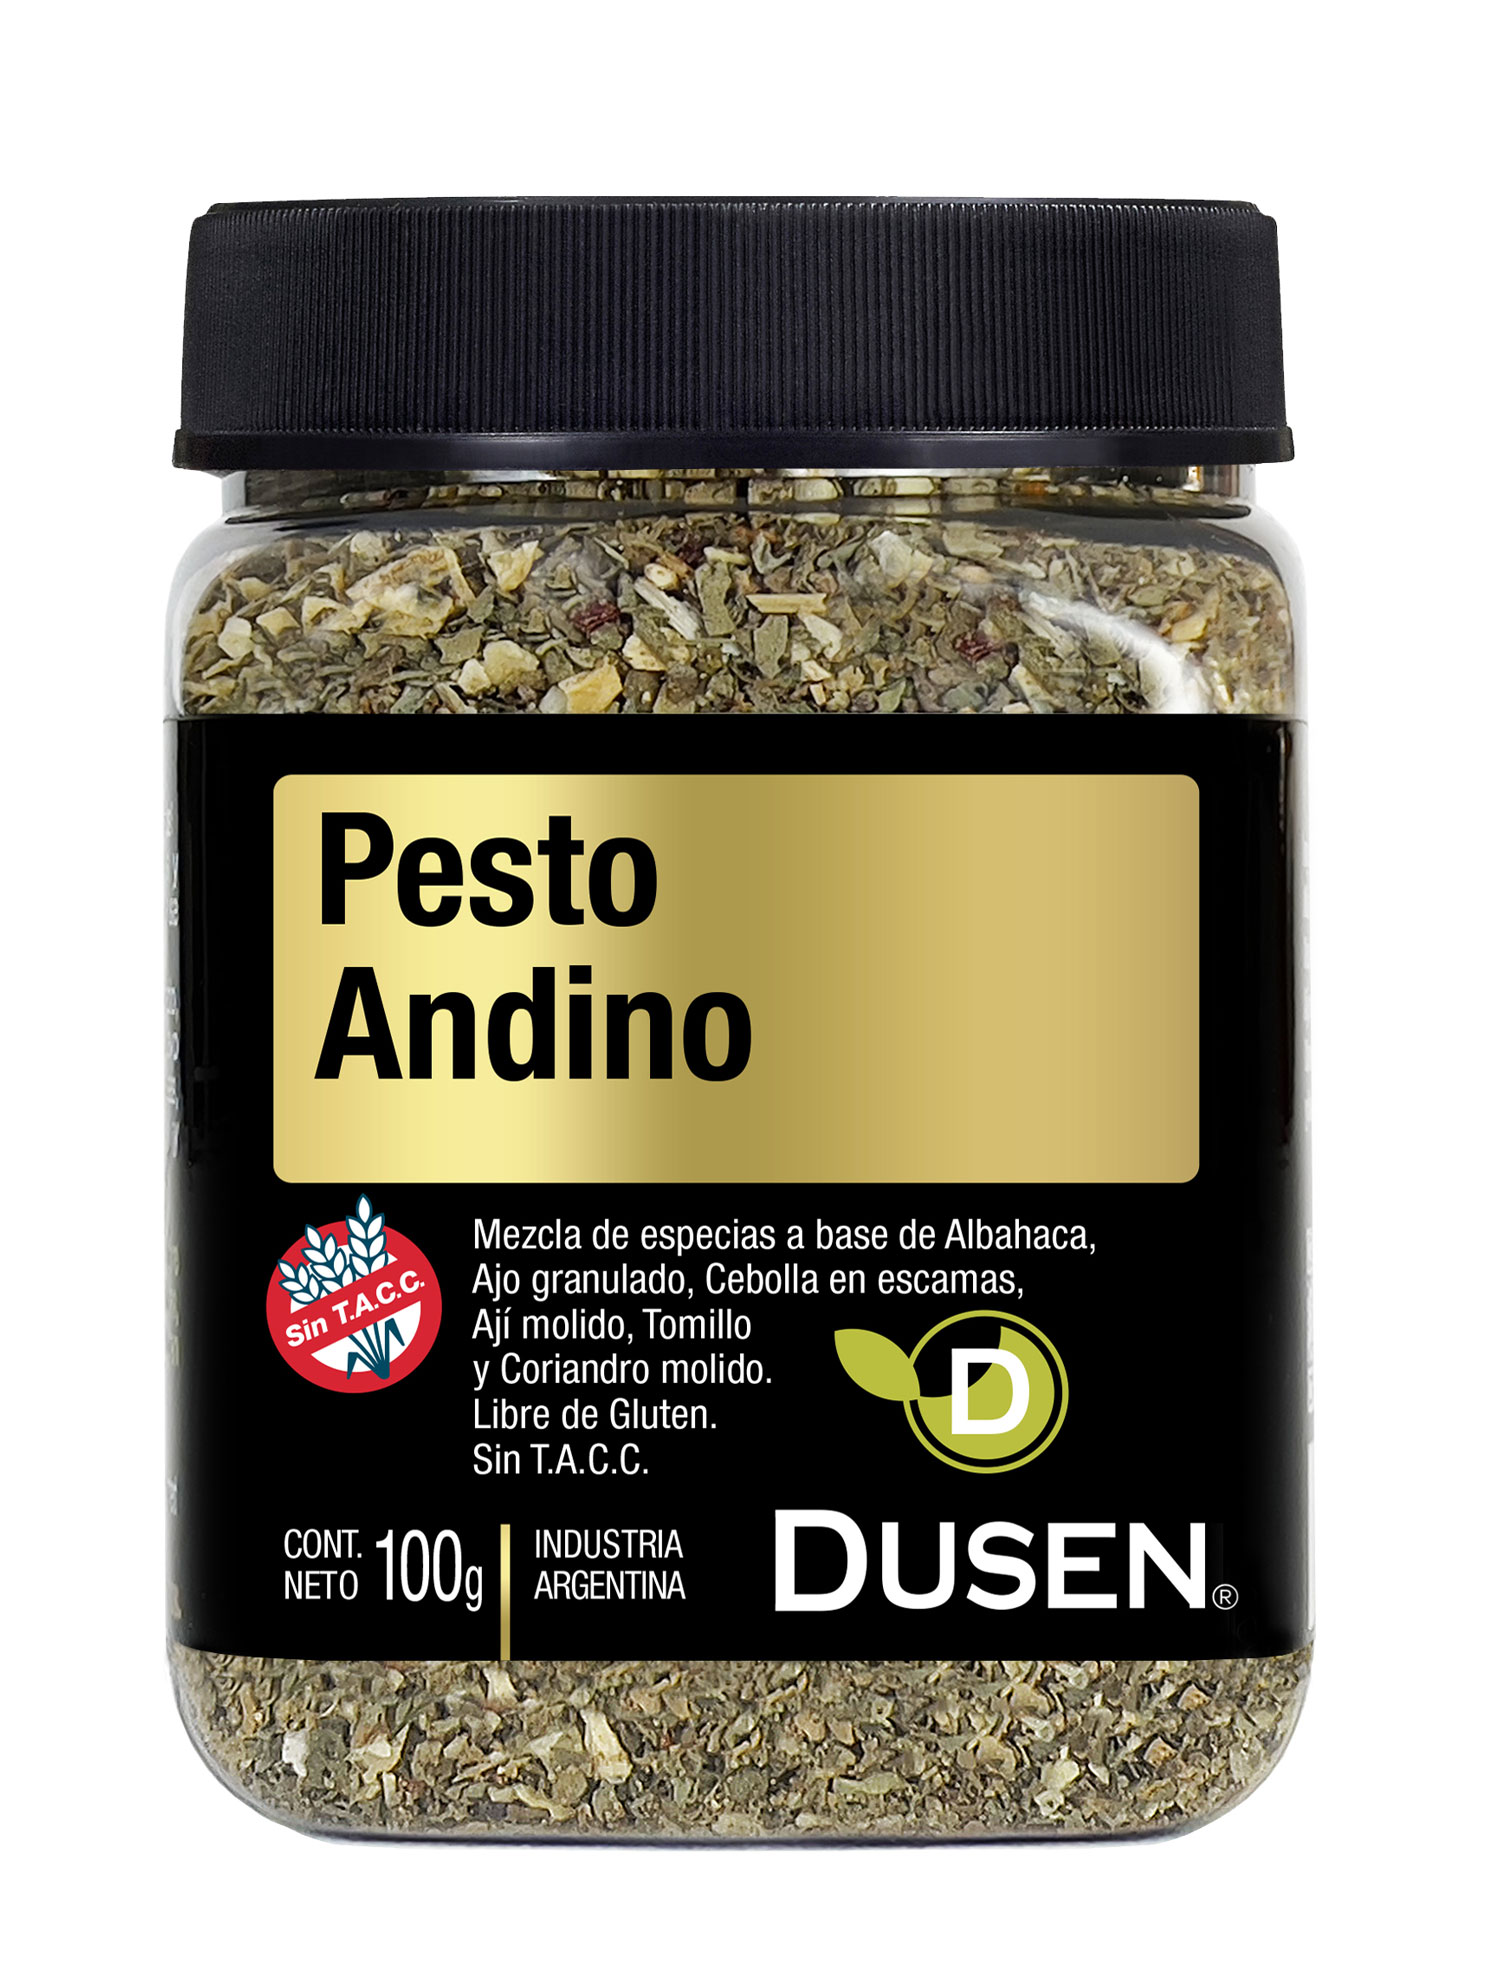 Pesto Andino